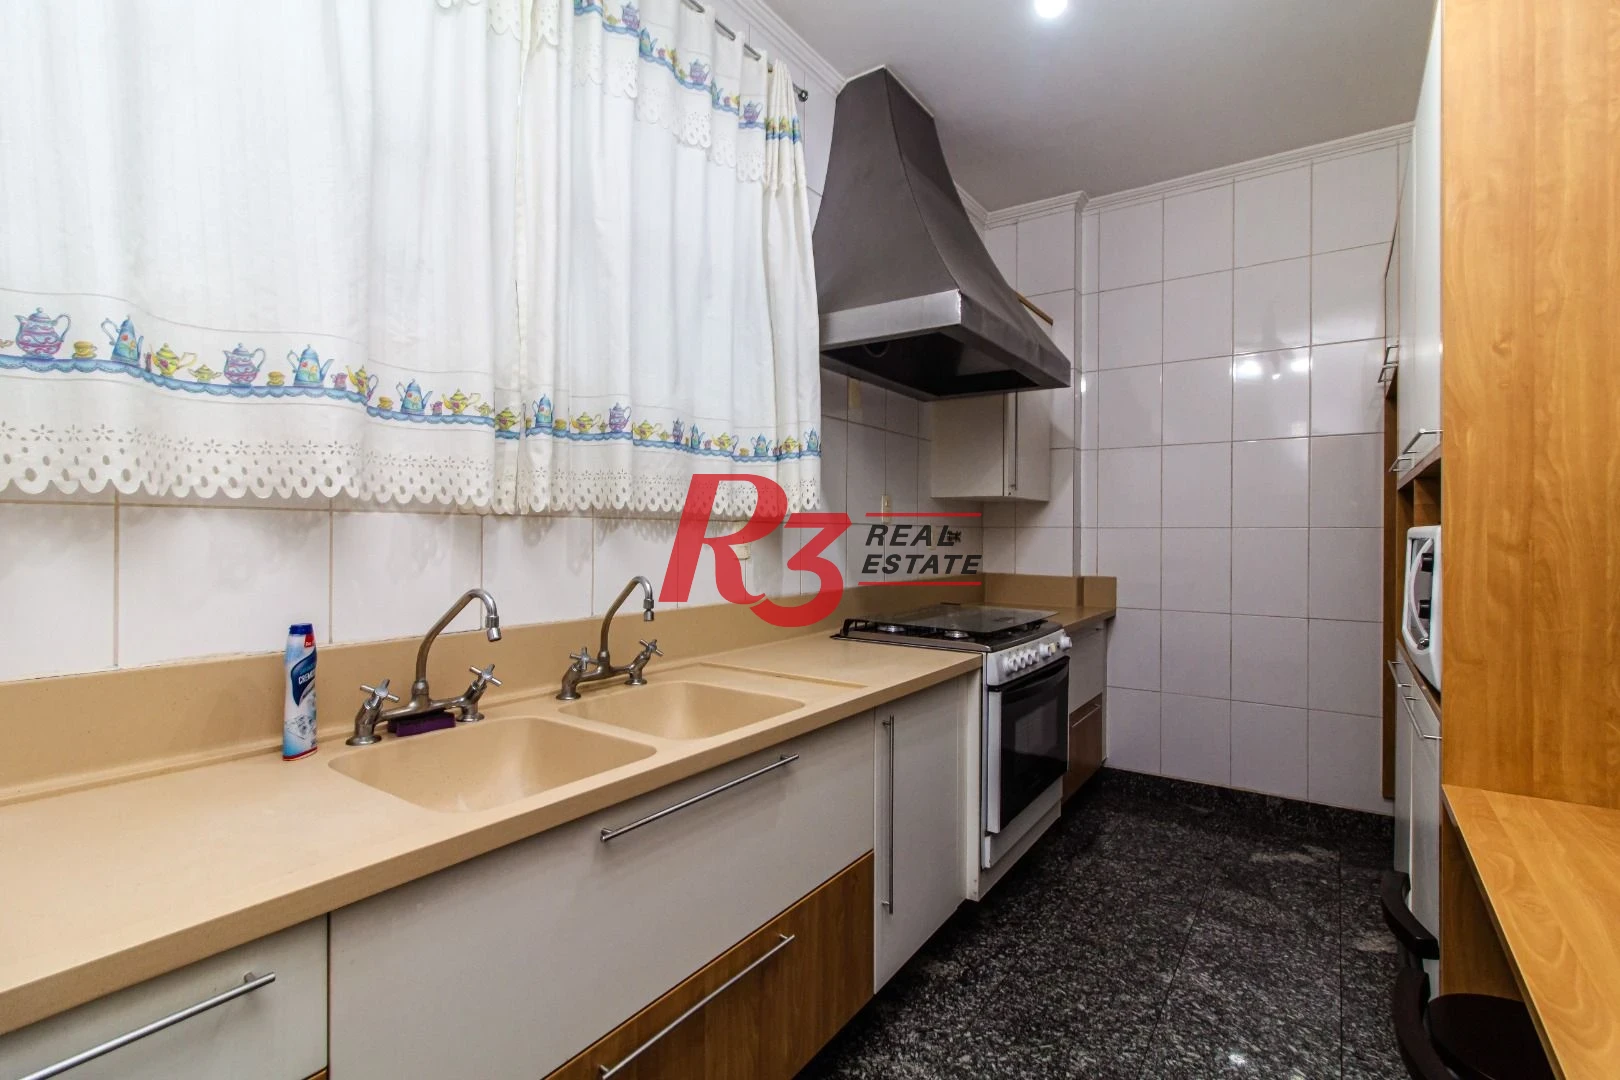 Sobrado com 4 dormitórios para alugar, 600 m² por R$ 13.900,00/mês - Ponta da Praia - Santos/SP